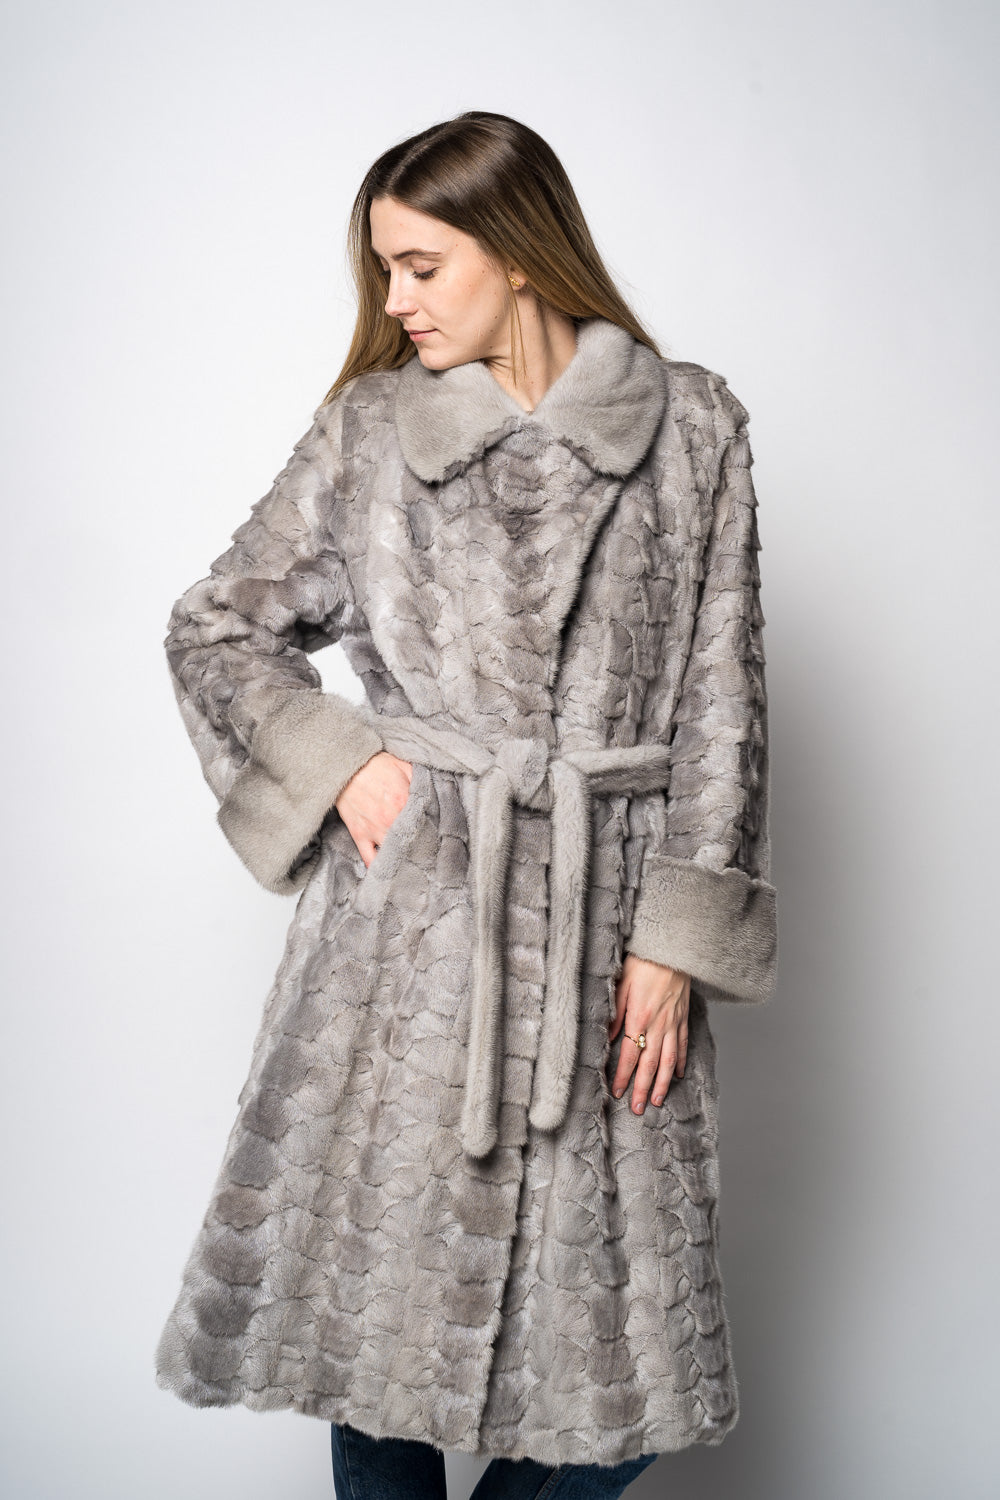 Silverblue mink frakke I frakker til kvinder I Bæredygtige pelse – Furbysofie